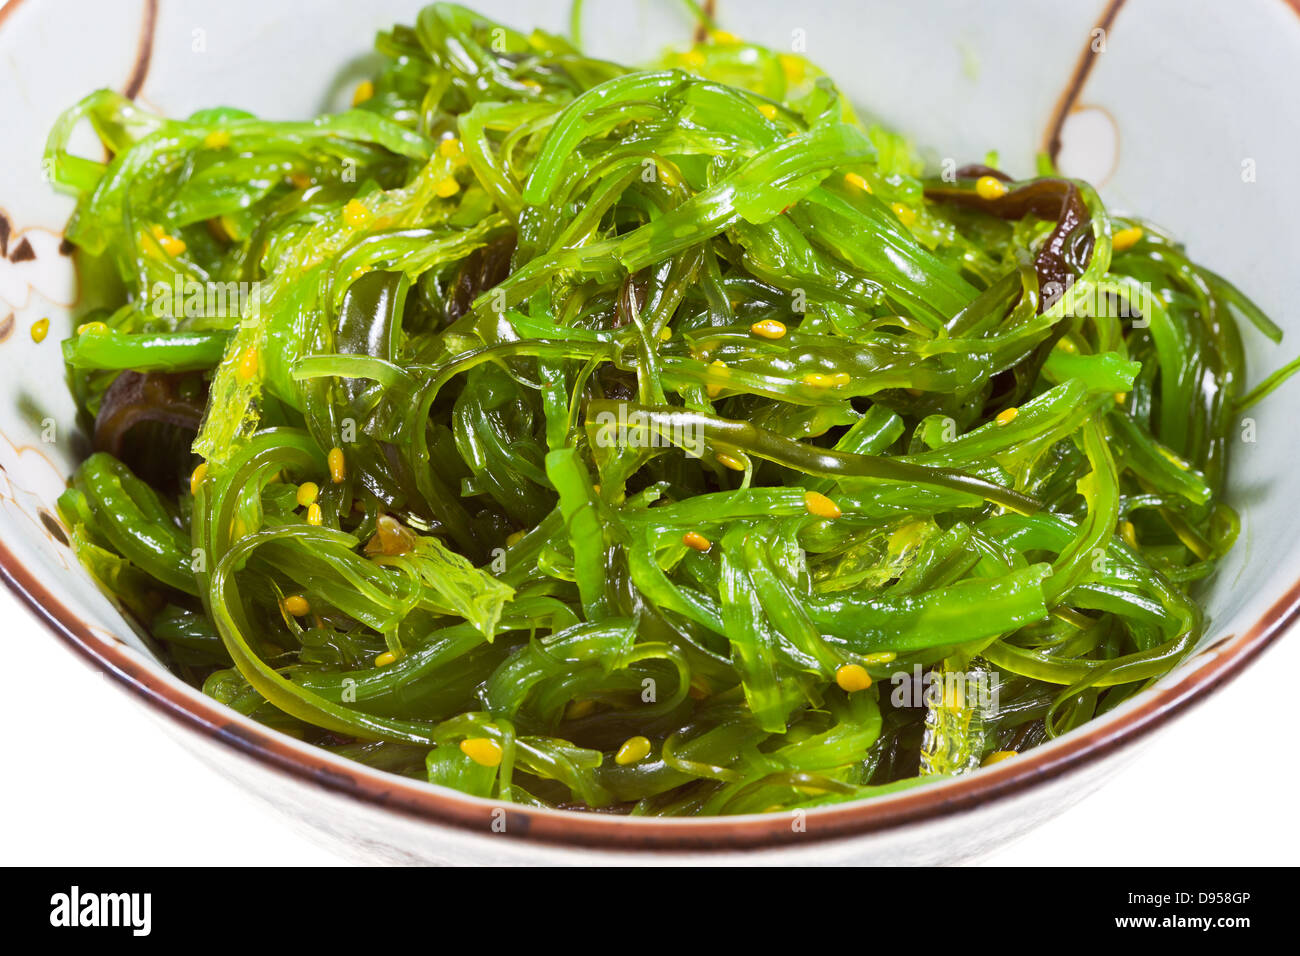 Chuka insalata - insalata di alghe marine con semi di sesamo nel recipiente di ceramica close up Foto Stock